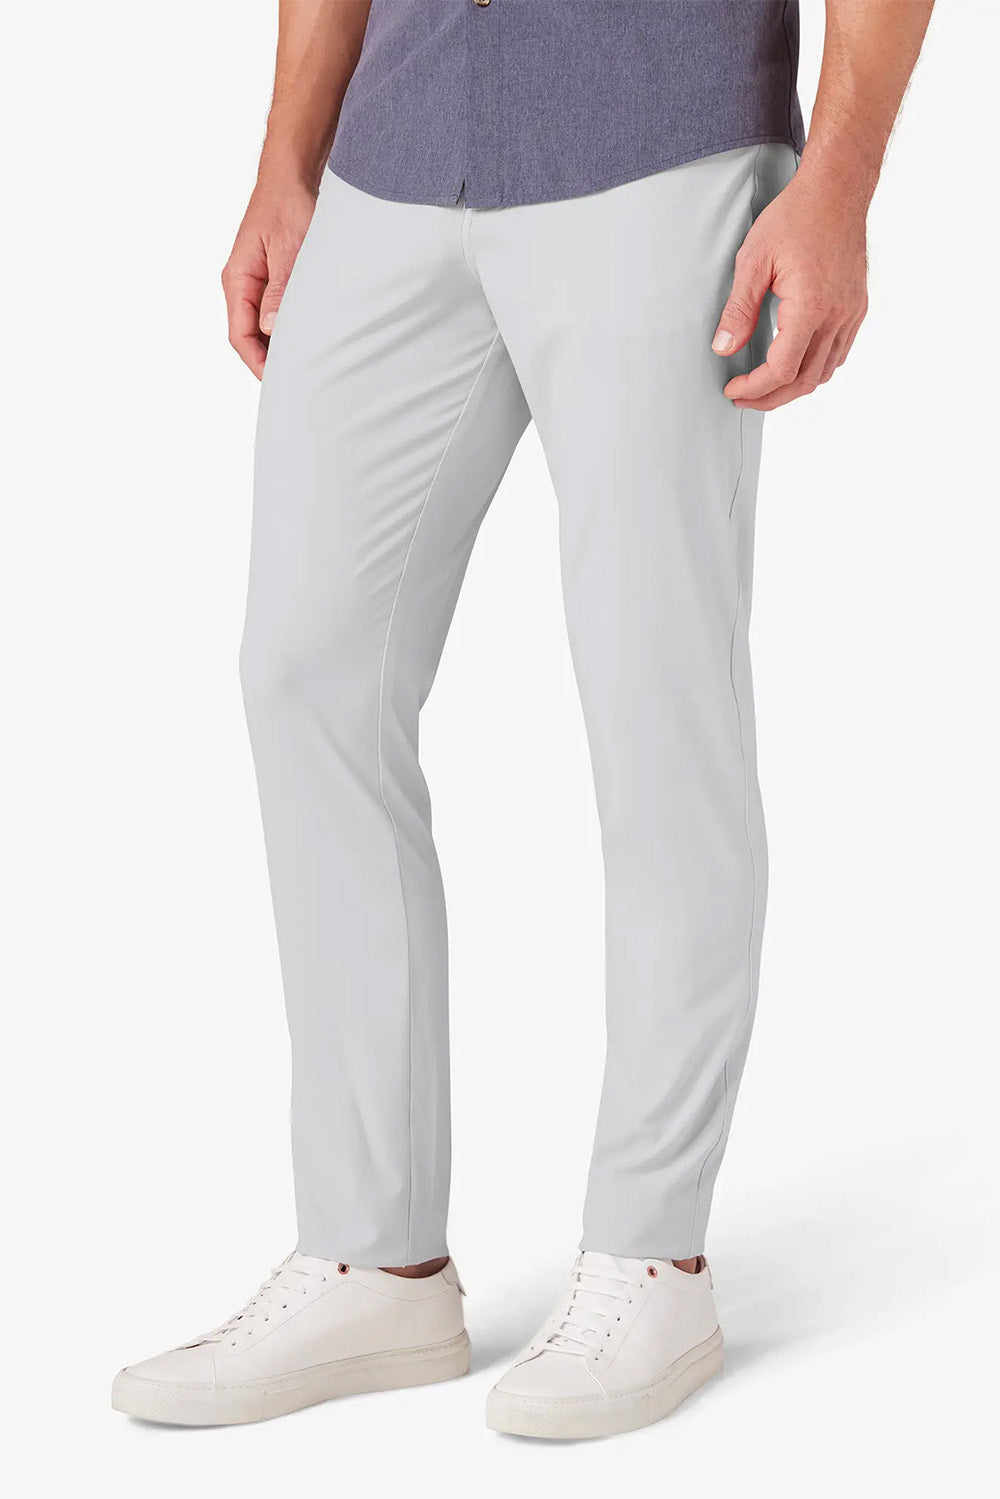 Mizzen + Main - Helmsman 5 Pocket Pant - Light Gray Solid - Side